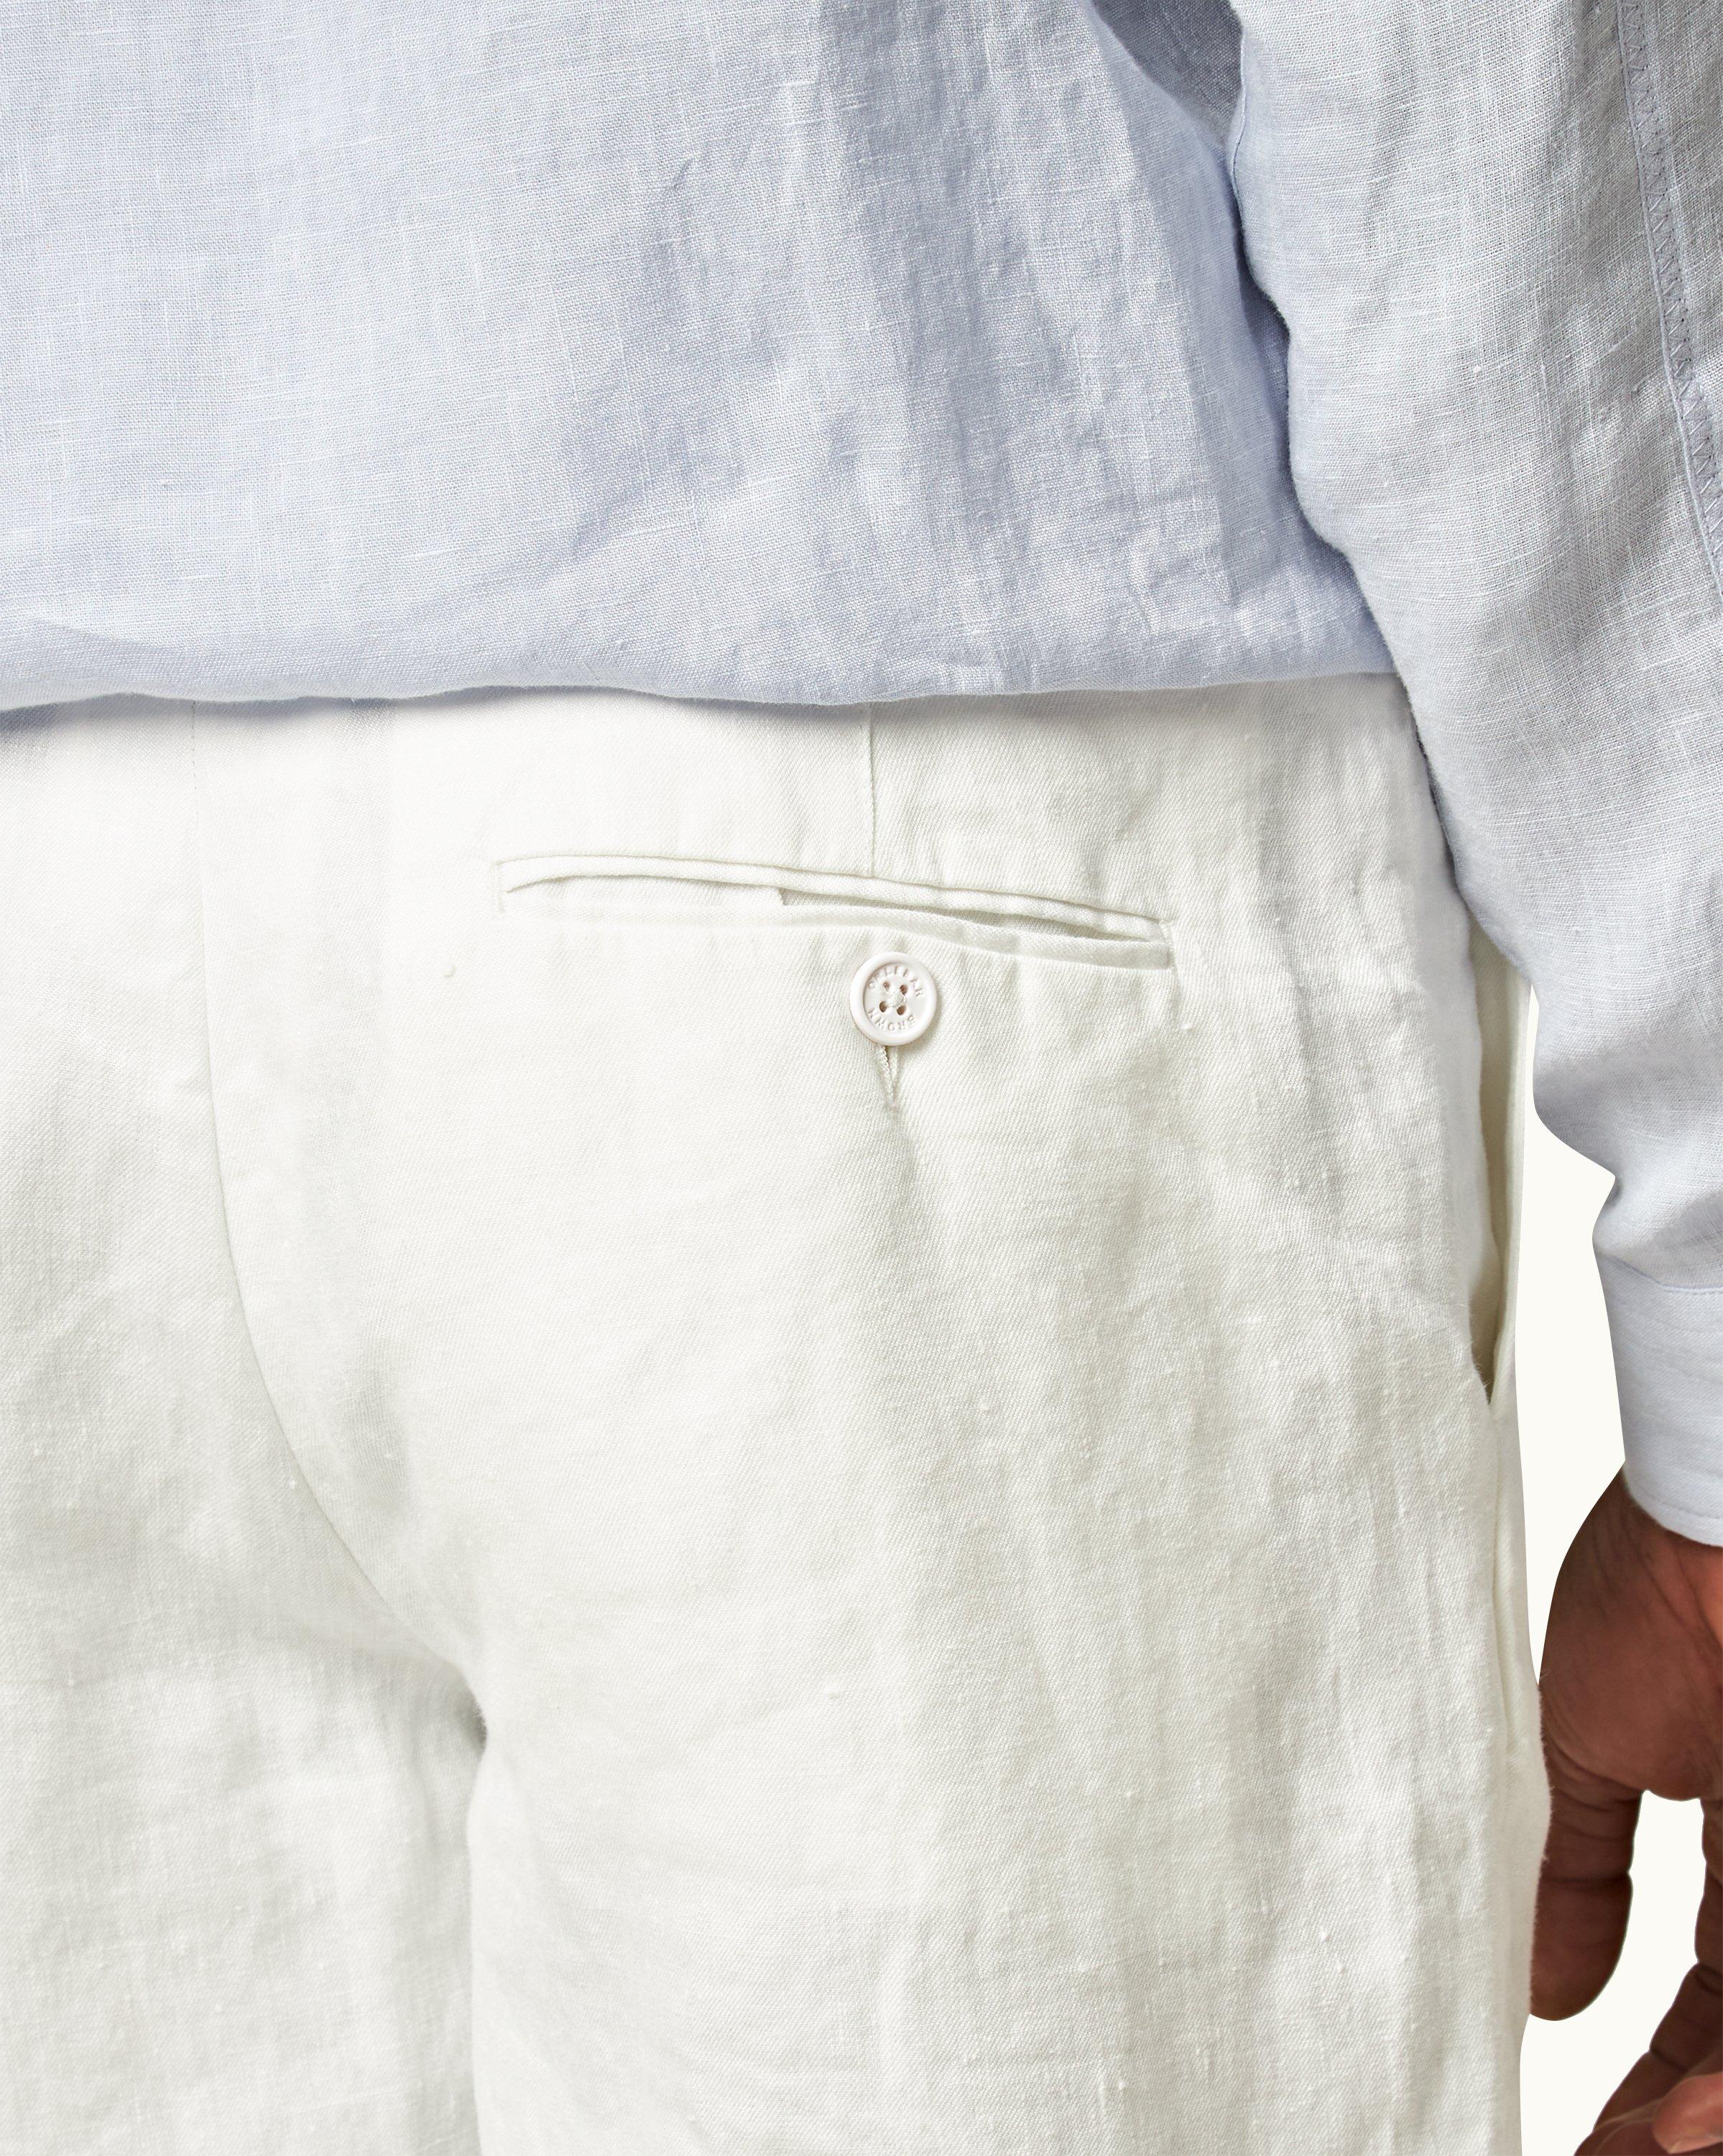 Men's White Linen Pants  Tailored Linen Pants -StudioSuits